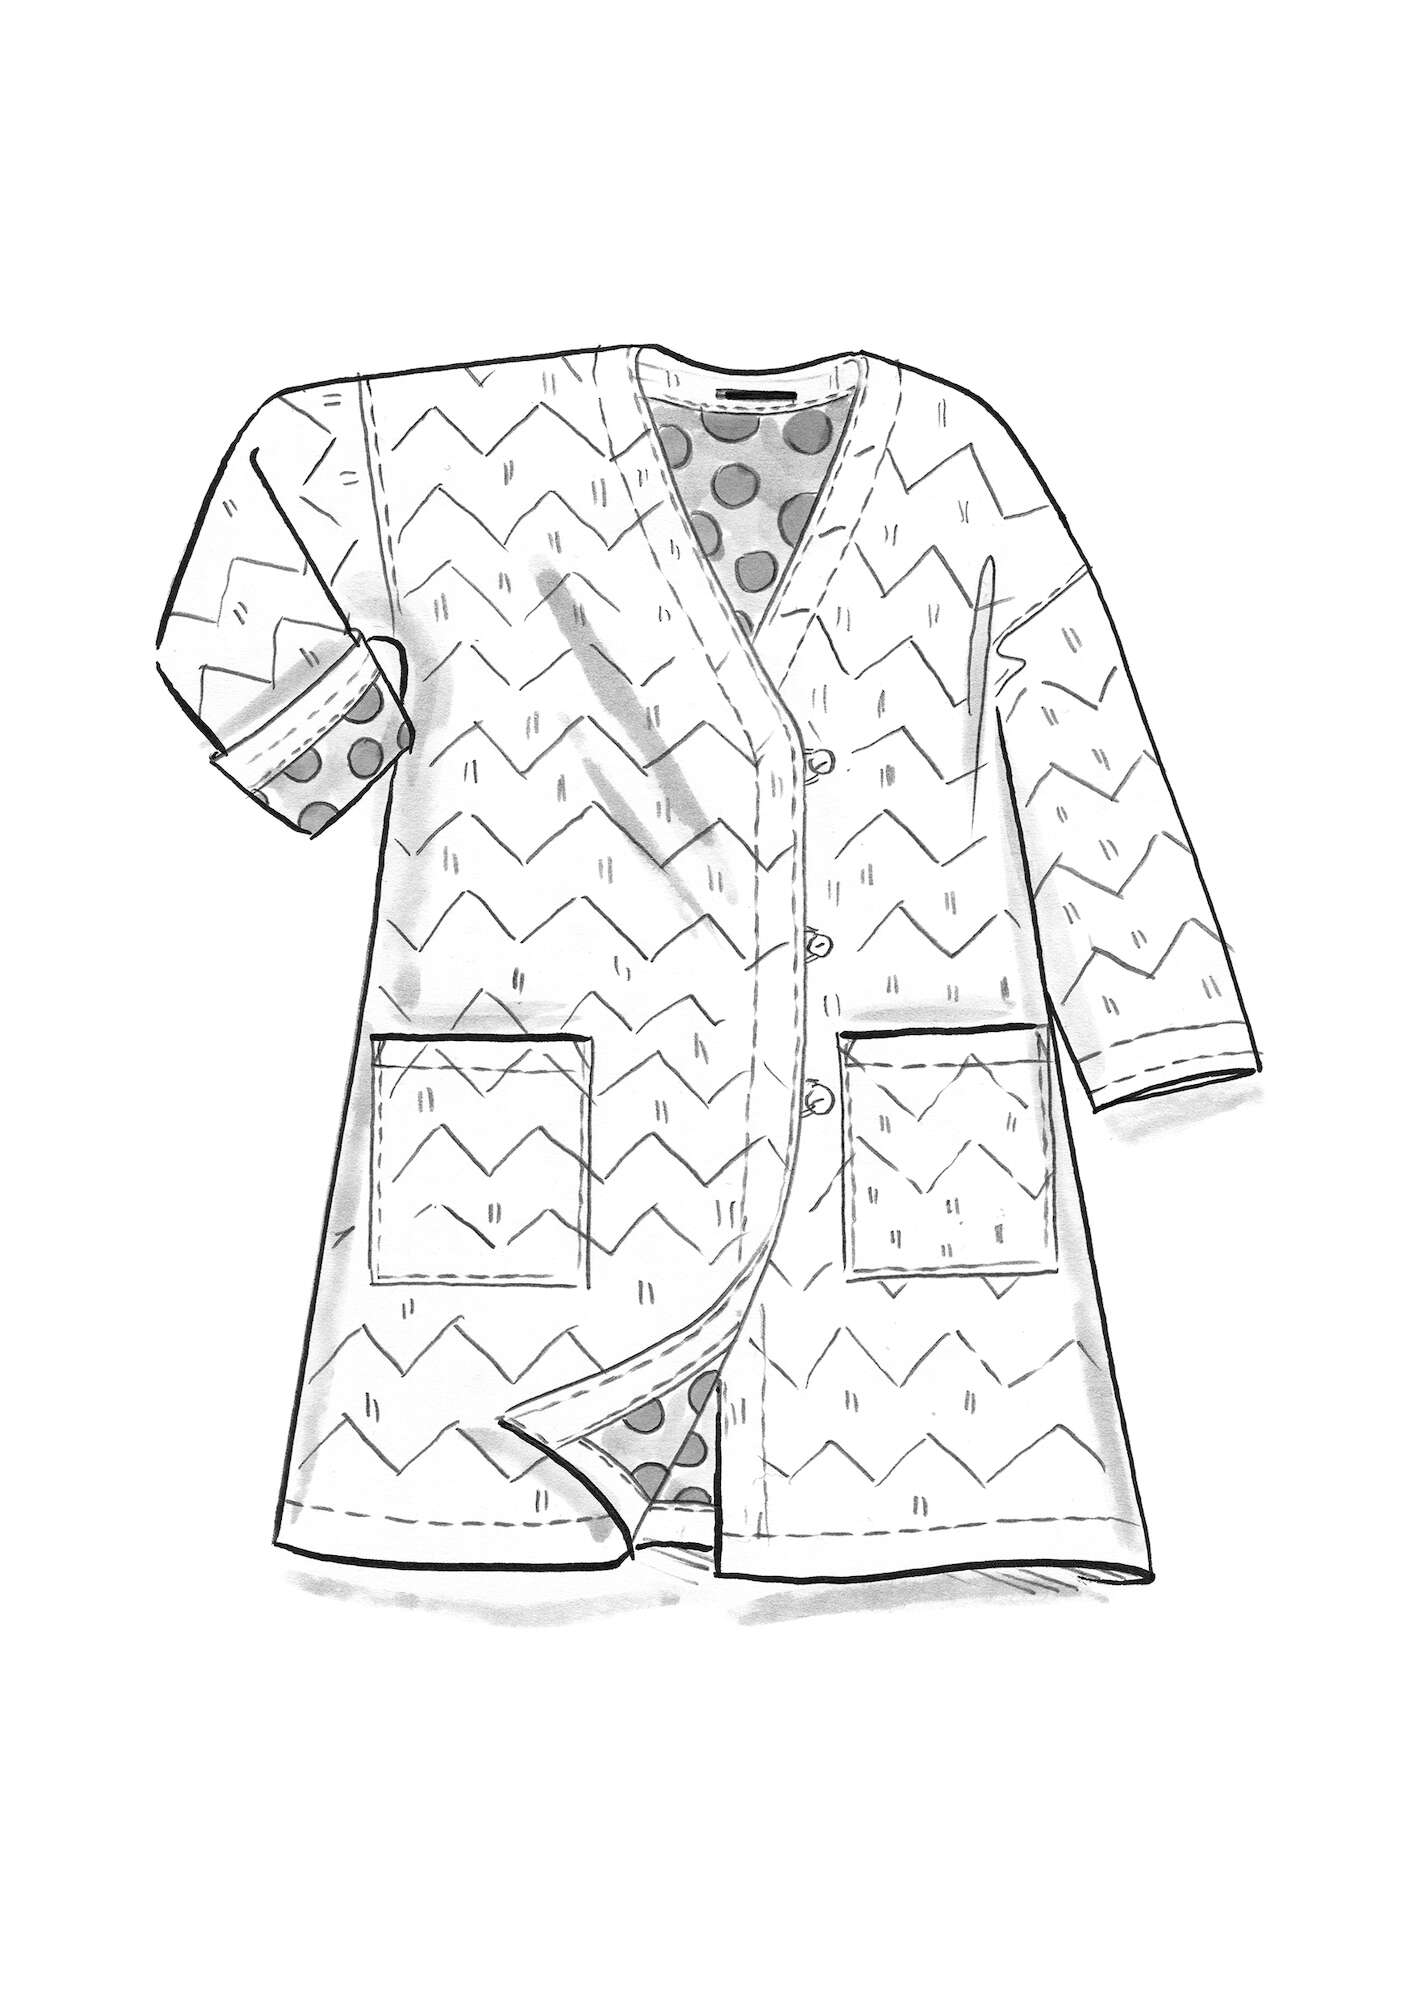 Doorgestikte jas  Kimono  van biologisch katoen/linnen indigo